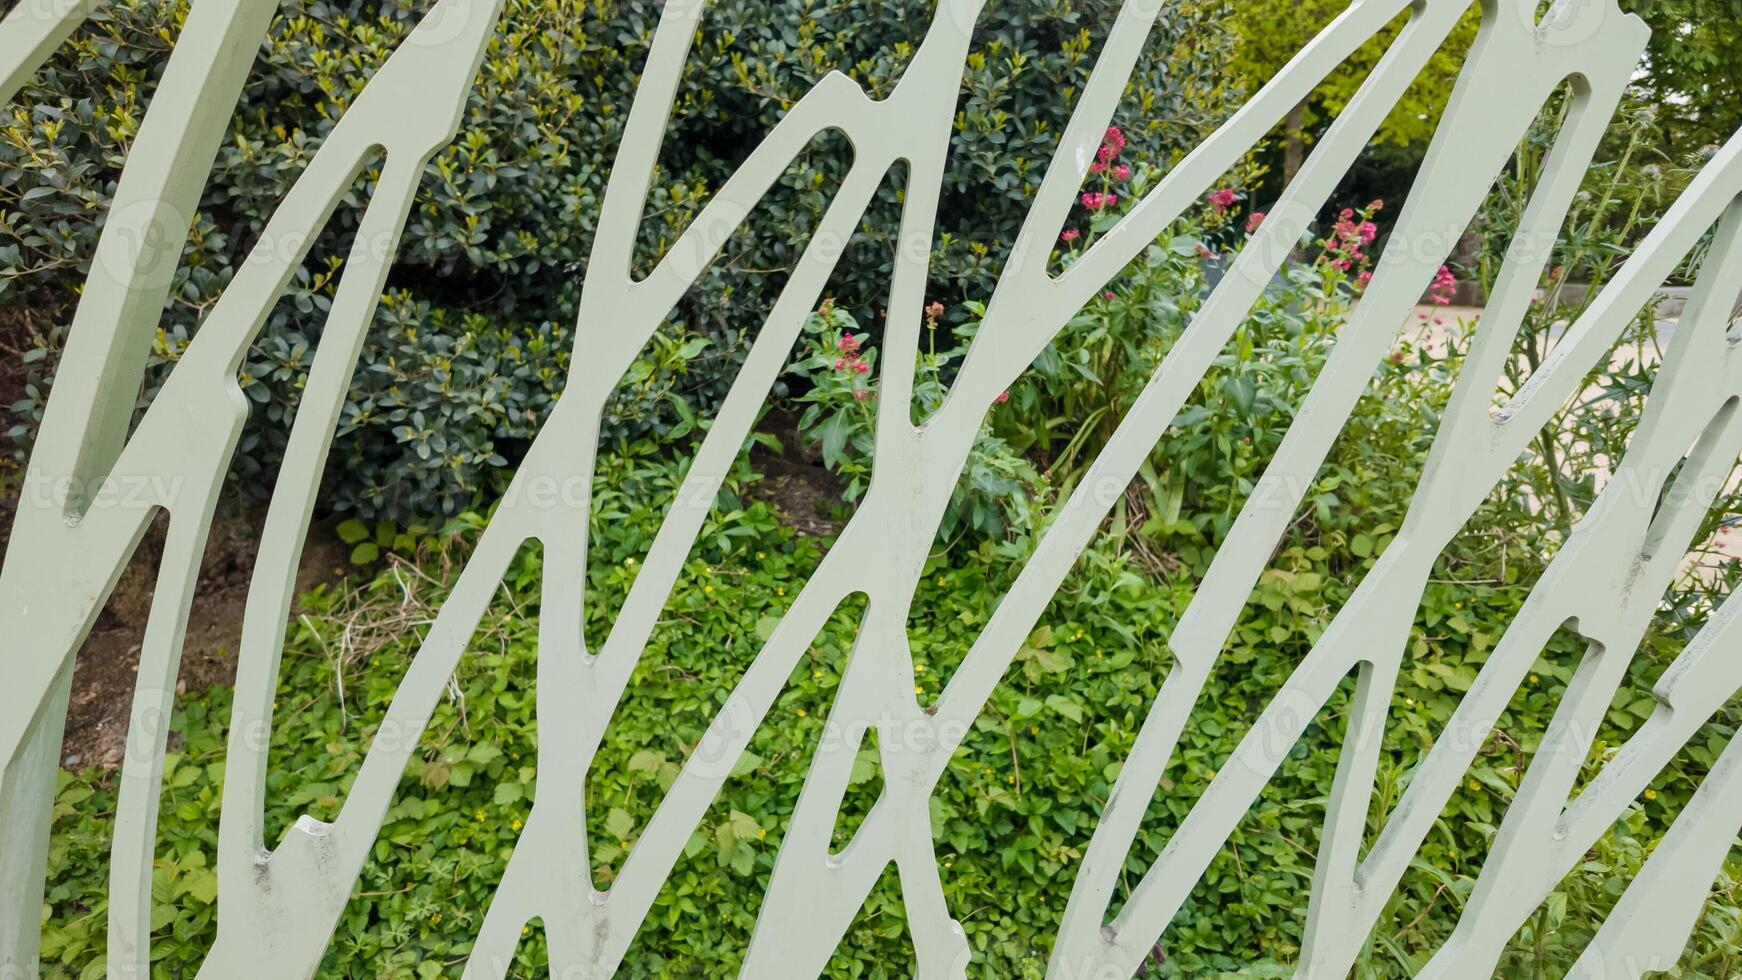 abstrait vue par une blanc artistique jardin clôture avec luxuriant verdure et épanouissement fleurs, idéal pour Accueil et jardin concepts ou aménagement paysager dessins photo